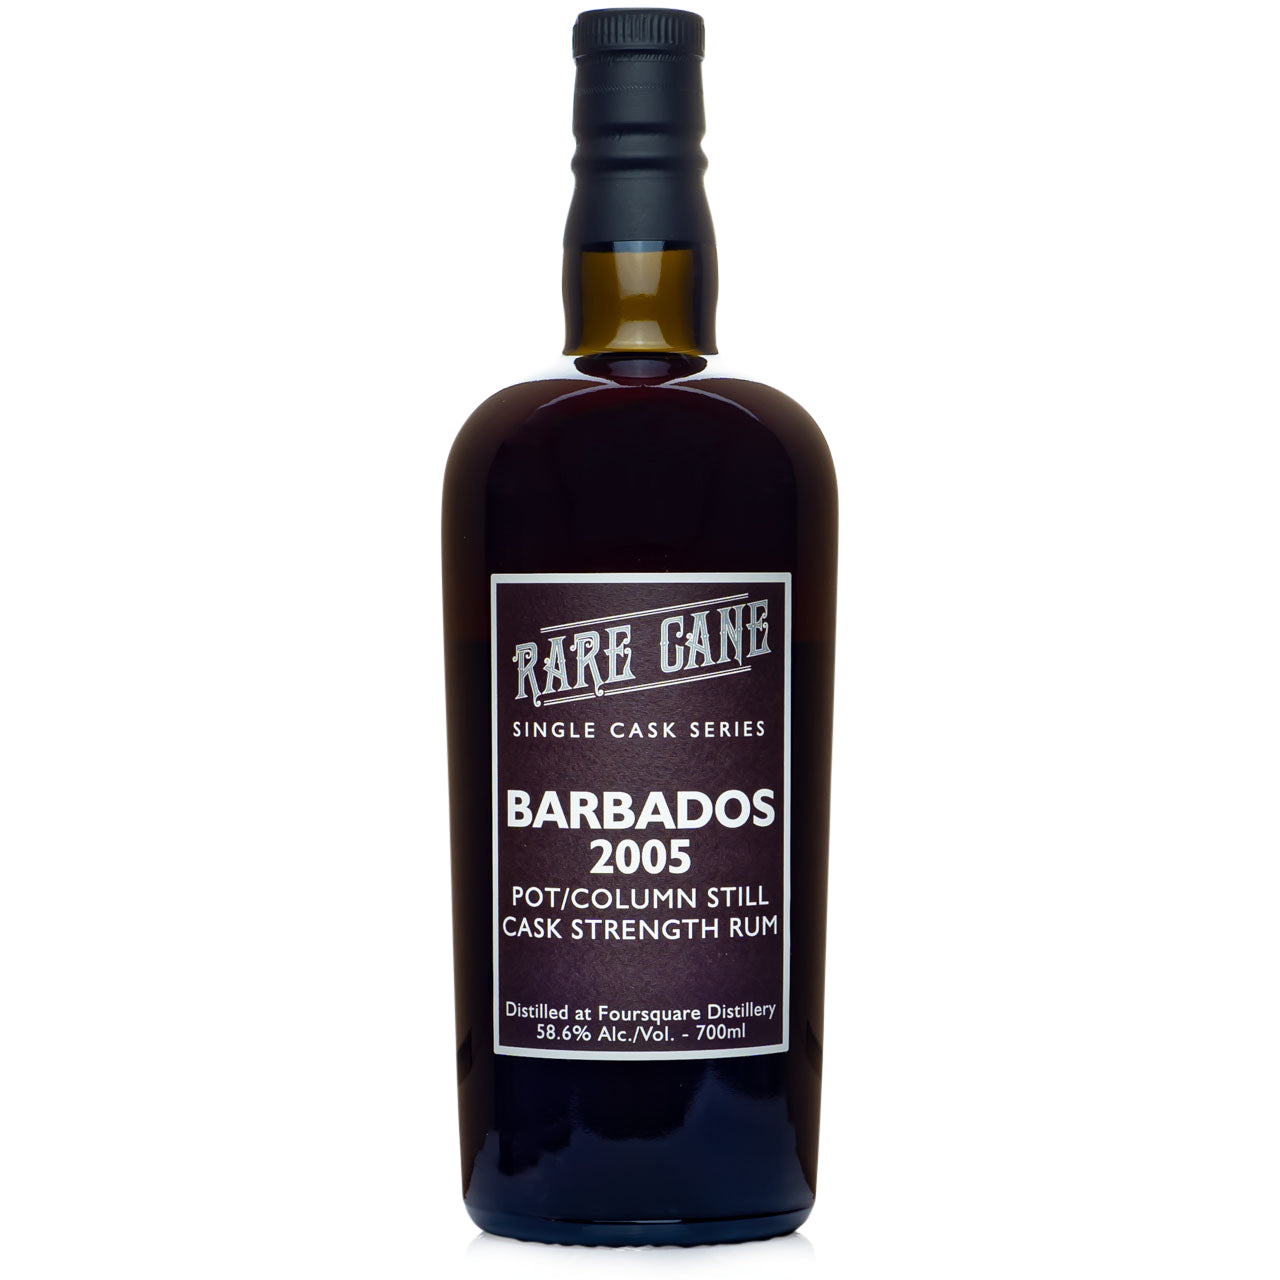 Rare Cane Barbados 2005 Single Cask Rum